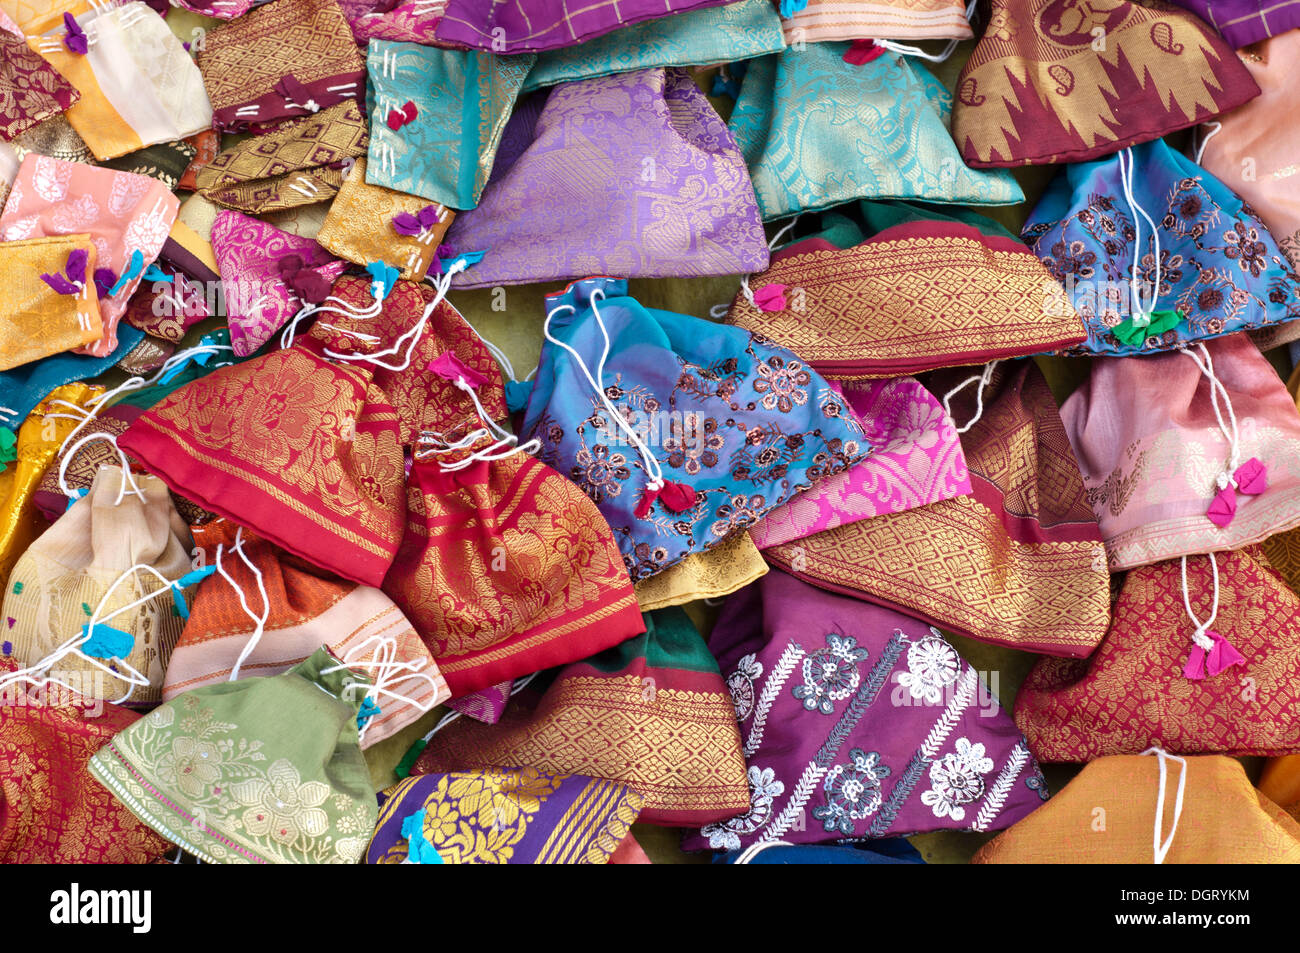 Indian silk bags, Mamallapuram, Mahabalipuram, Tamil Nadu, India Stock Photo